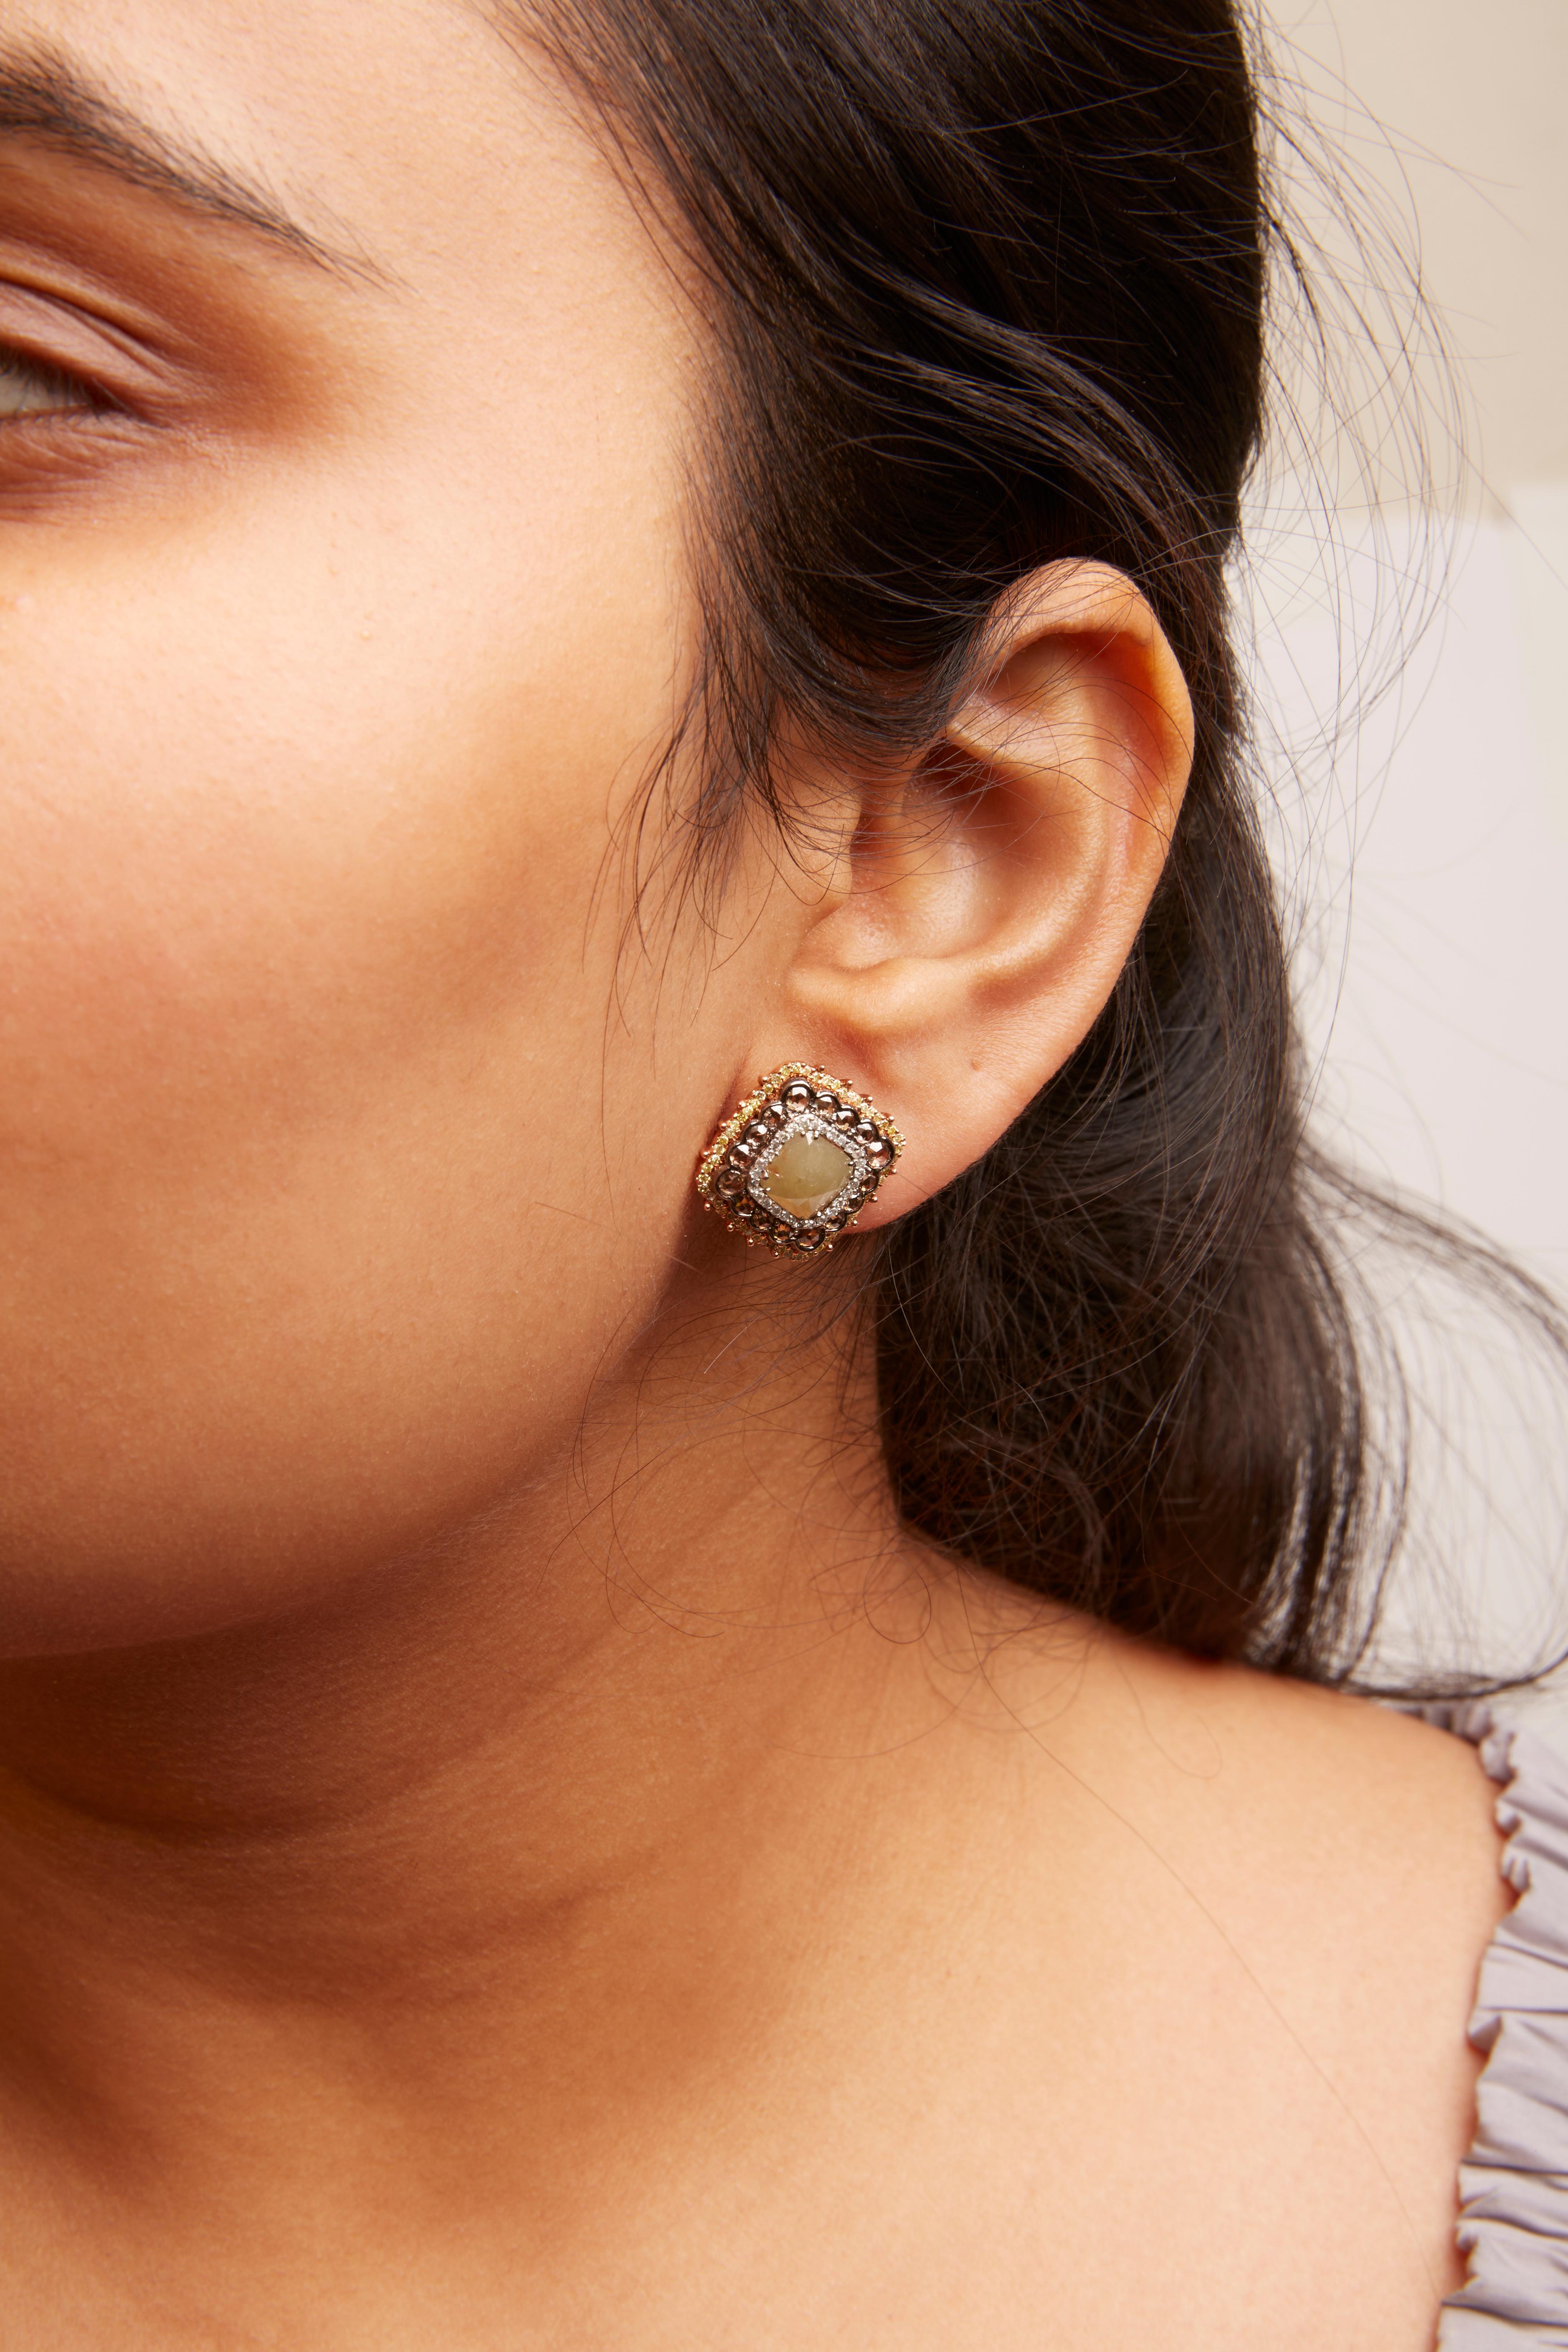 Update more than 248 fancy gold stud earrings